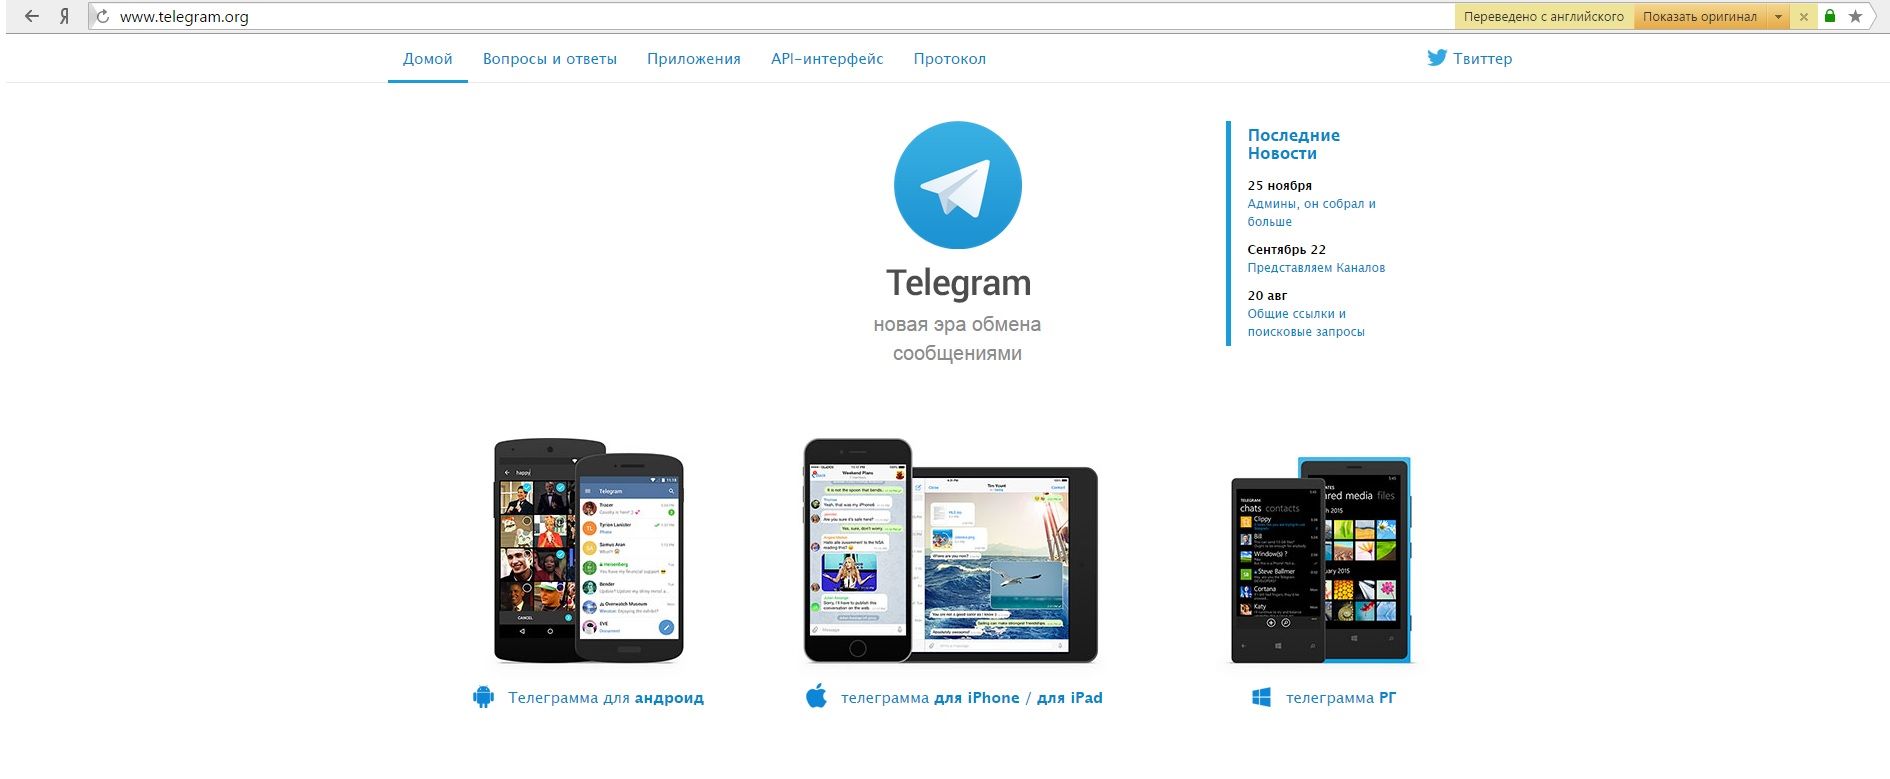 Как установить телеграмм на андроид бесплатно на русском инструкция фото 92